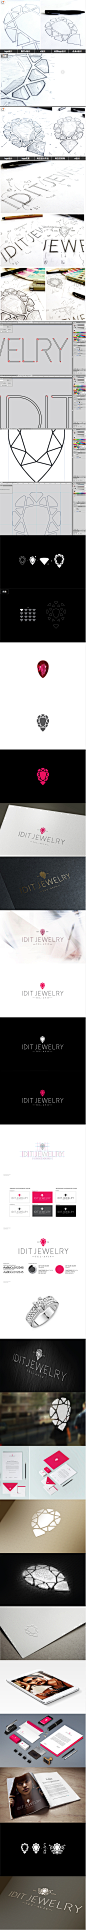 IDIT珠宝品牌logo设计/珠宝标志设计/宝石logo设计,珠宝公司标志设计欣赏，珠宝公司logo设计欣赏，宝石标-来源于品牌设计网